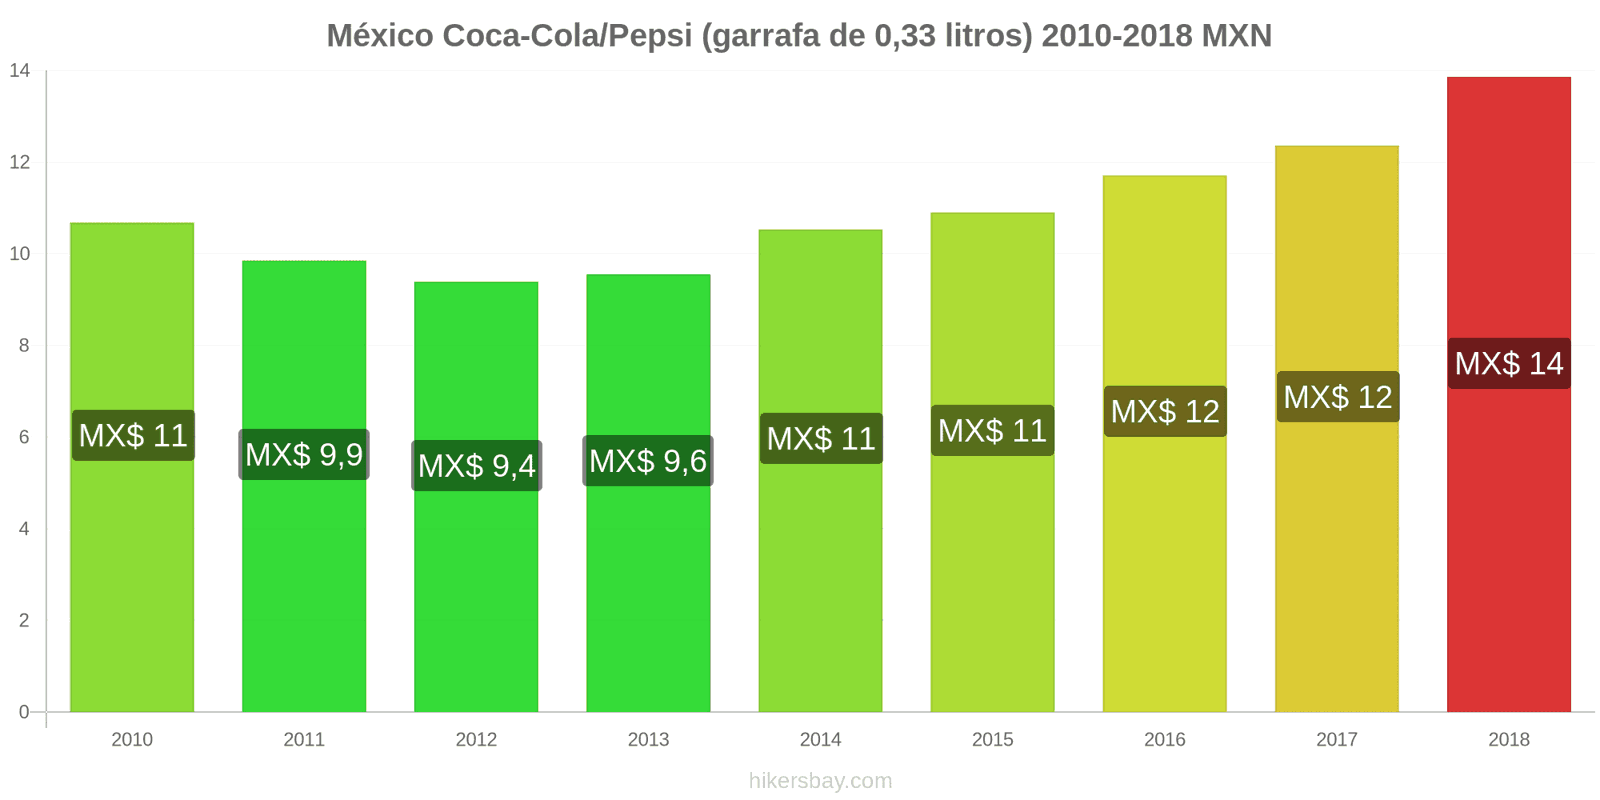 México mudanças de preços Coca-Cola/Pepsi (garrafa de 0.33 litros) hikersbay.com